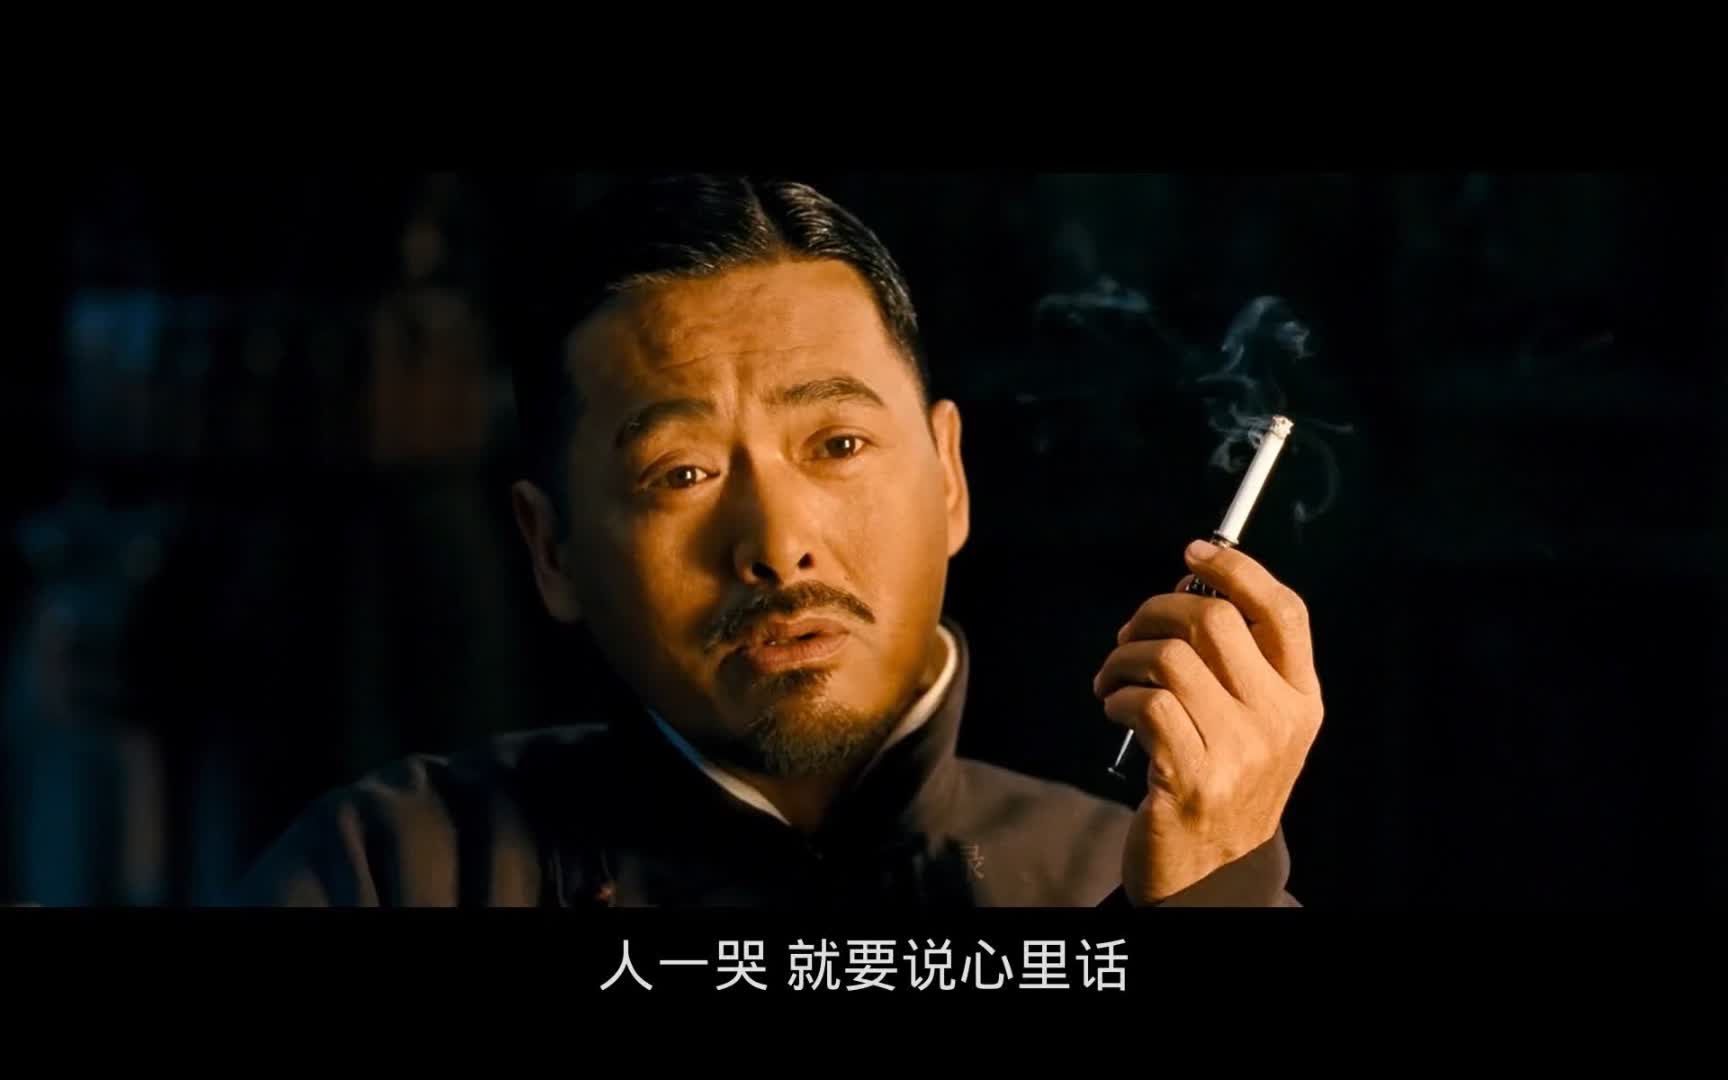 让子弹飞_电影剧照_图集_电影网_1905.com